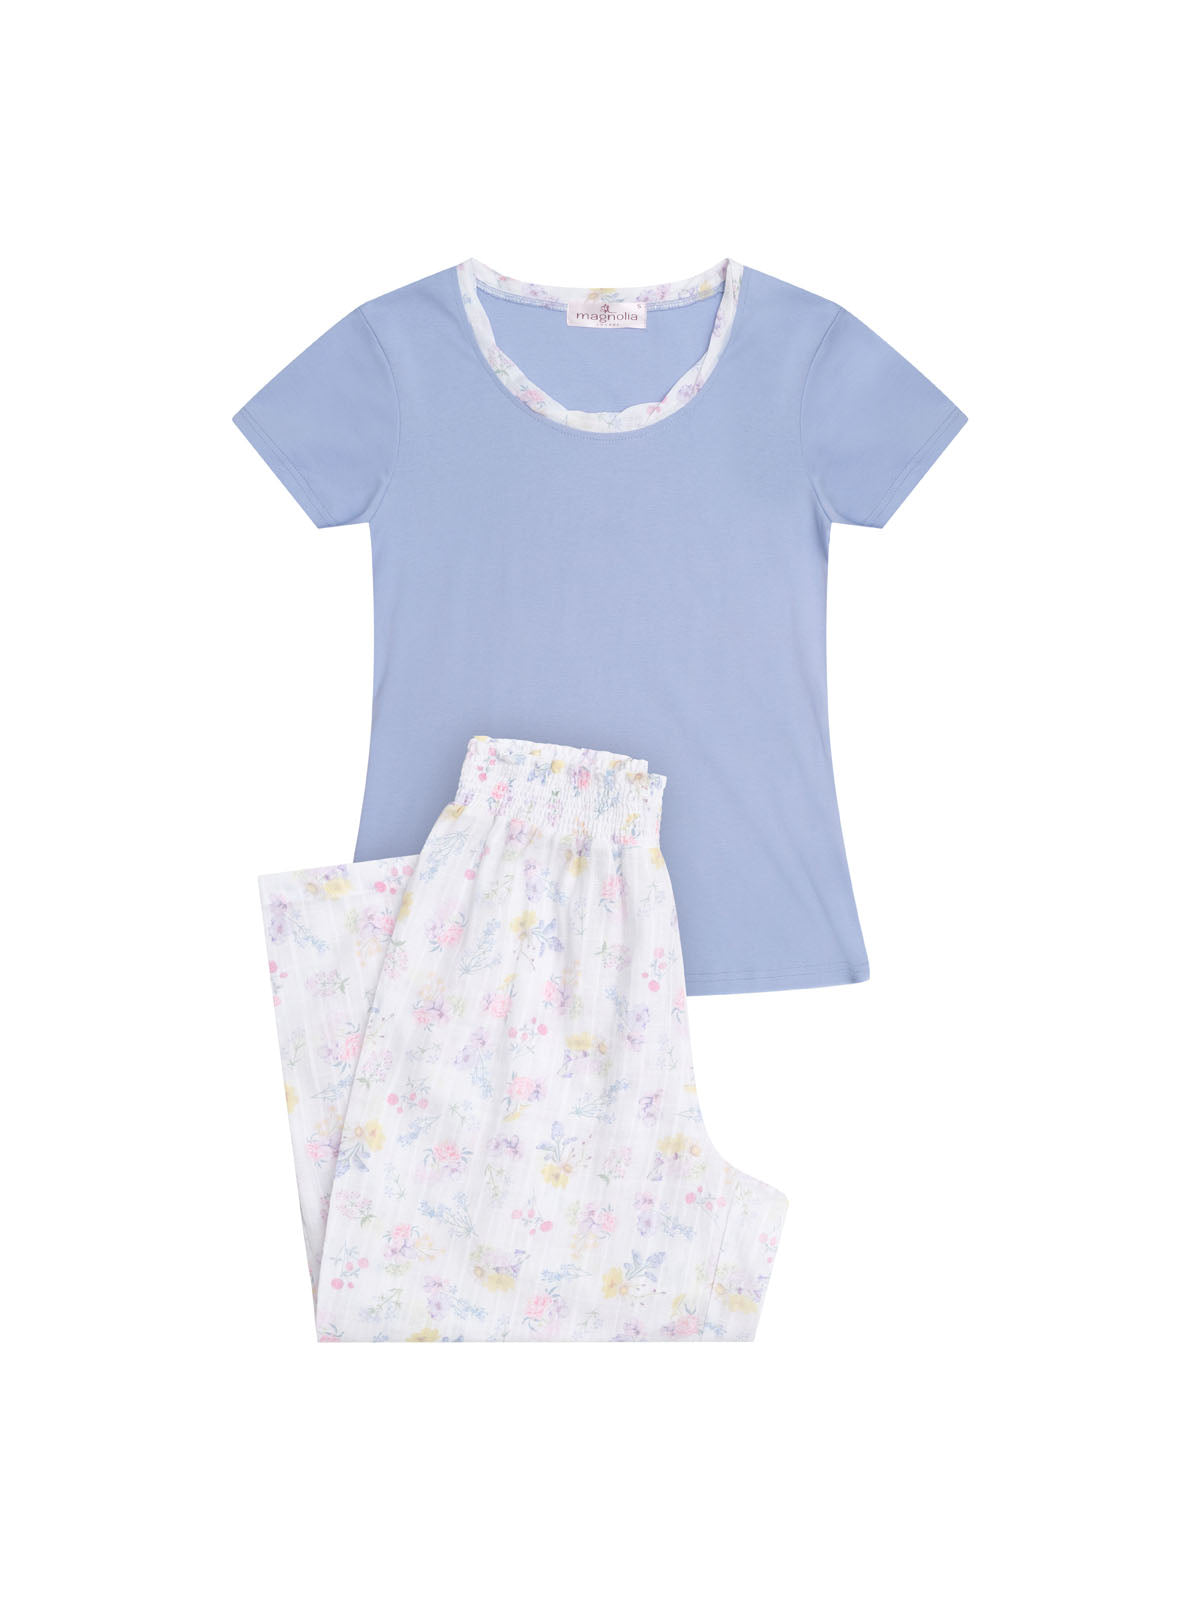 Women's Spring Meadow Cotton Tee with 3/4 Pant Pyjama Set | Magnolia Lounge Australia